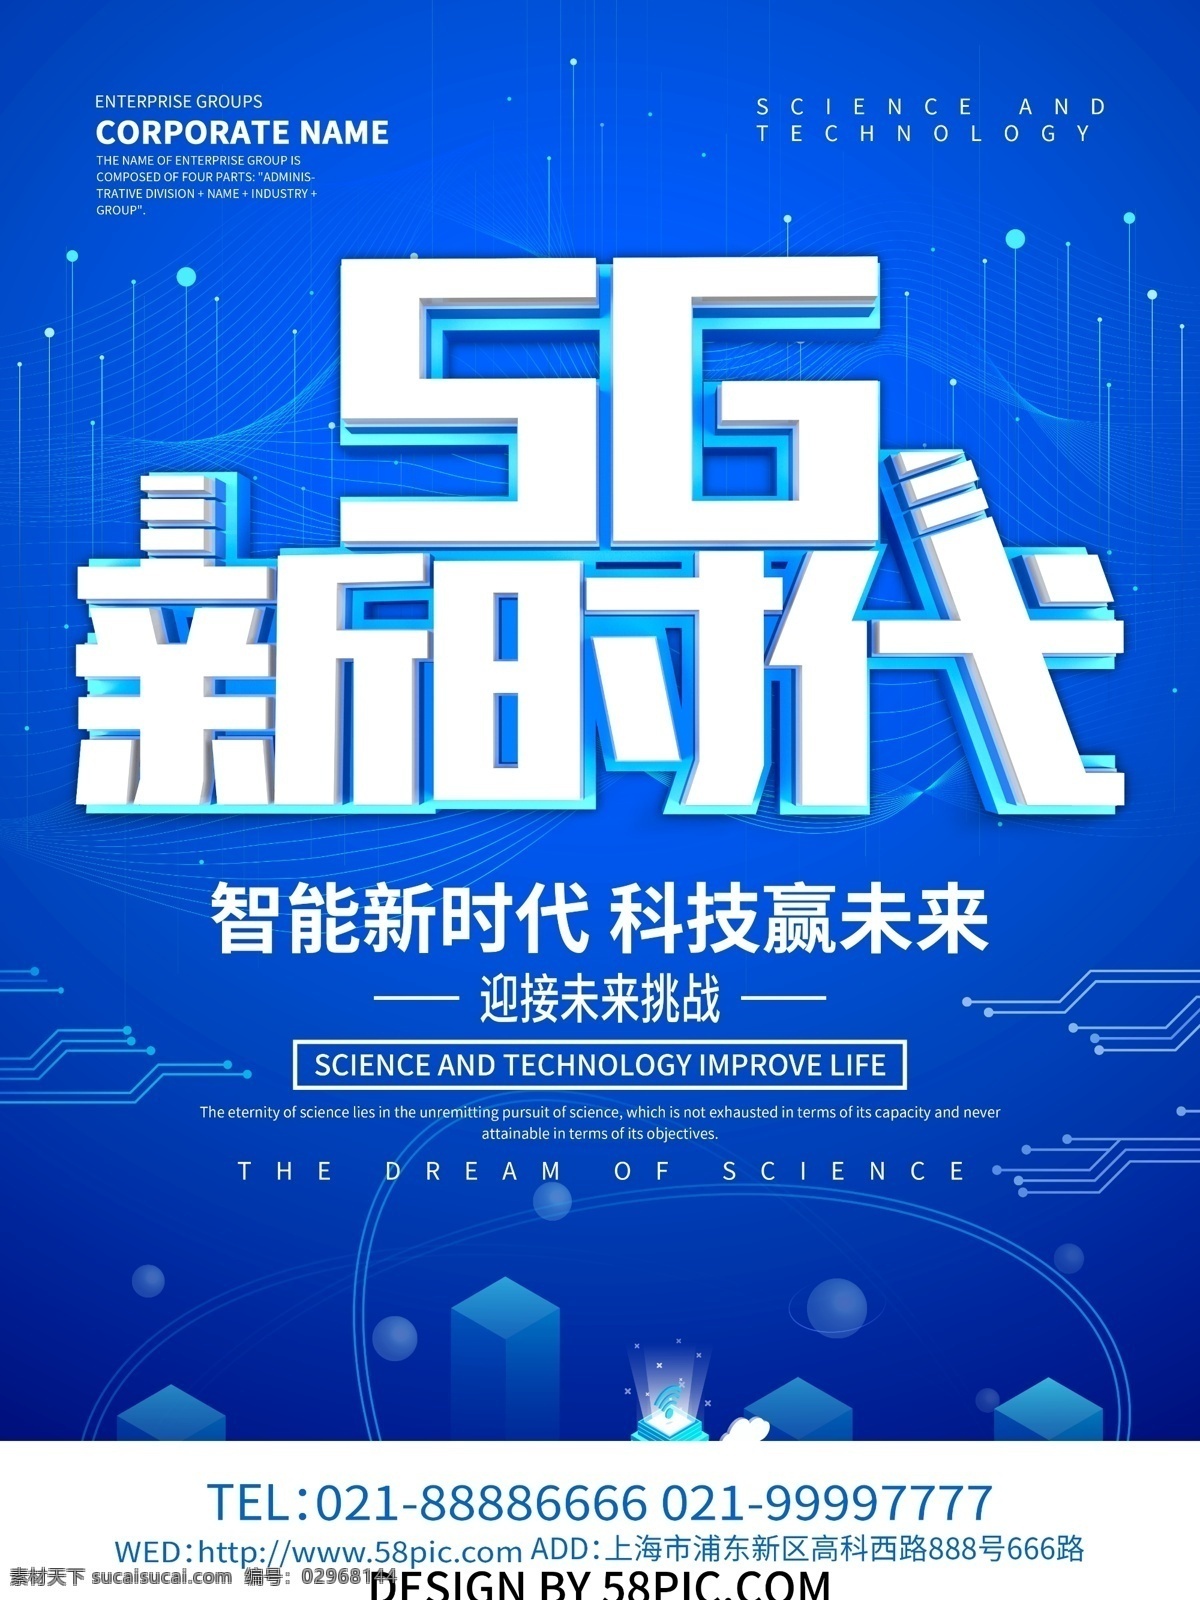 5g时代 5g海报 5g 未来科技 5g技术 5g网络技术 5g传送 5g广告 5g网络广告 智能网络 手机5g网络 手机网络 5g光速